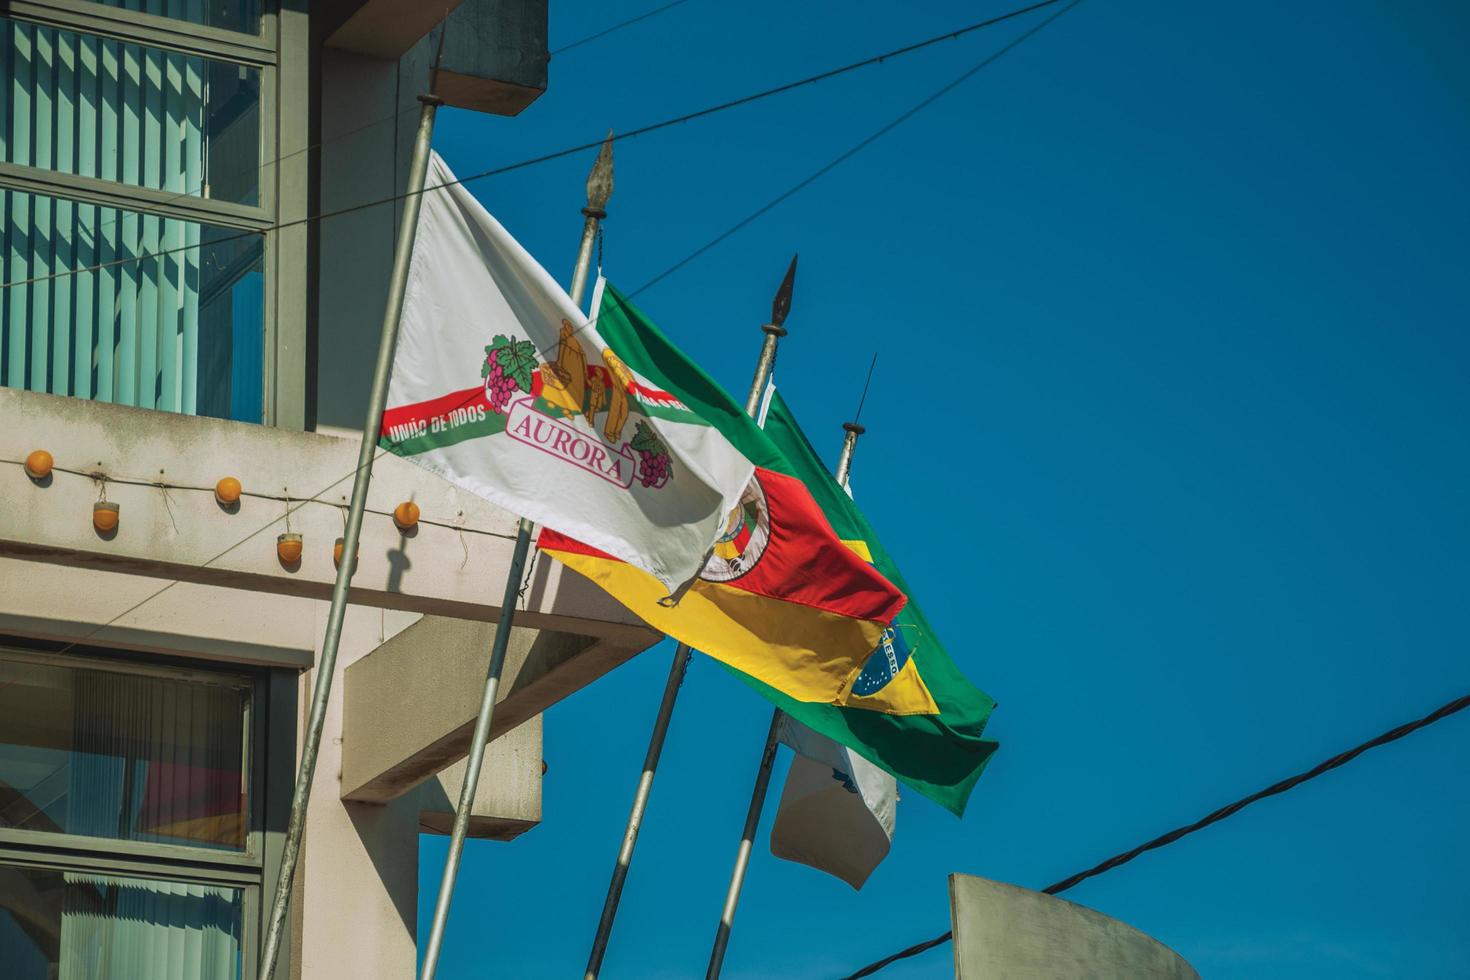 bento goncalves, brazilië - 11 juli 2019. vlaggen van het aurora-wijnmakerijbedrijf, rio grande do sul, brazilië en de stad bento goncalves. een vriendelijk plattelandsstadje dat bekend staat om zijn wijnproductie. foto